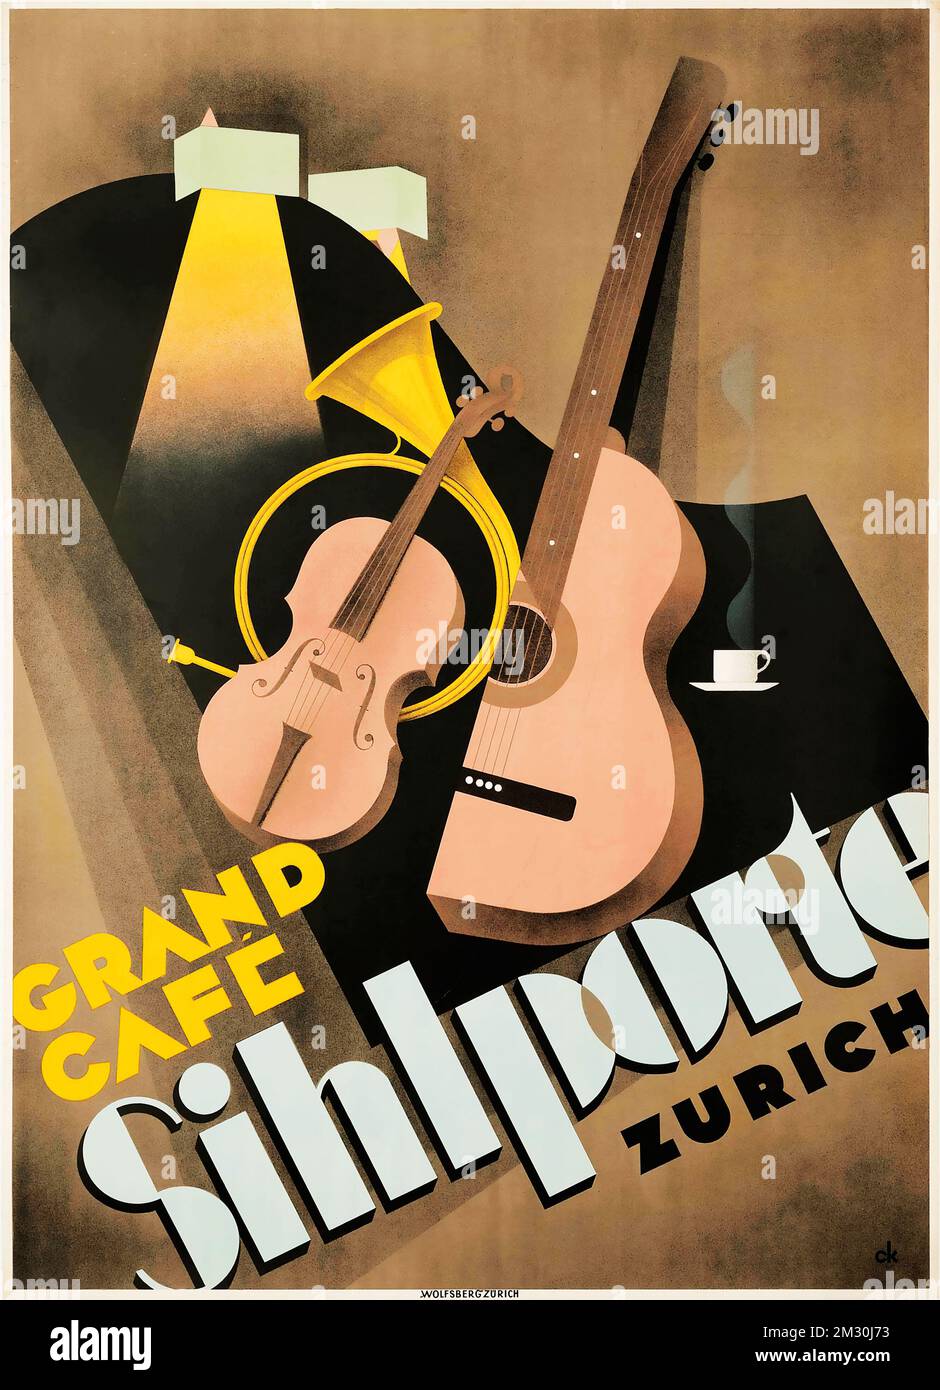 Affiche publicitaire vintage - GRAND CAFE SIHLPORTE, Zürich 1933 - affiche suisse Banque D'Images